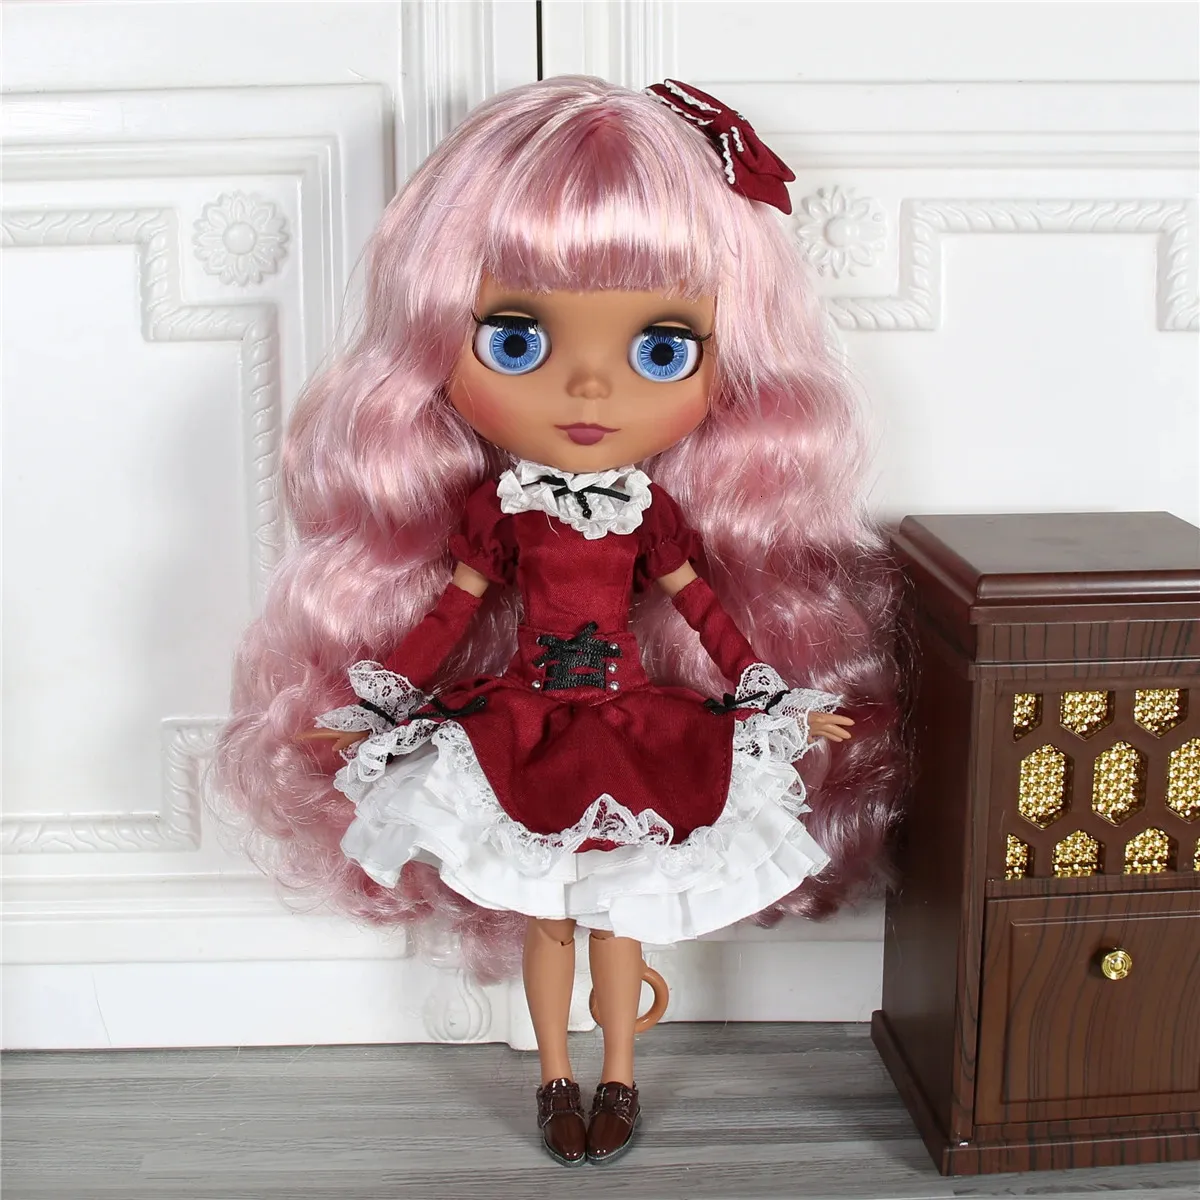 ICY DBS Blyth Doll 16 bjd corpo articolare pelle scura viso opaco viola mix capelli rosa giocattolo 30 cm regalo per ragazze 240311